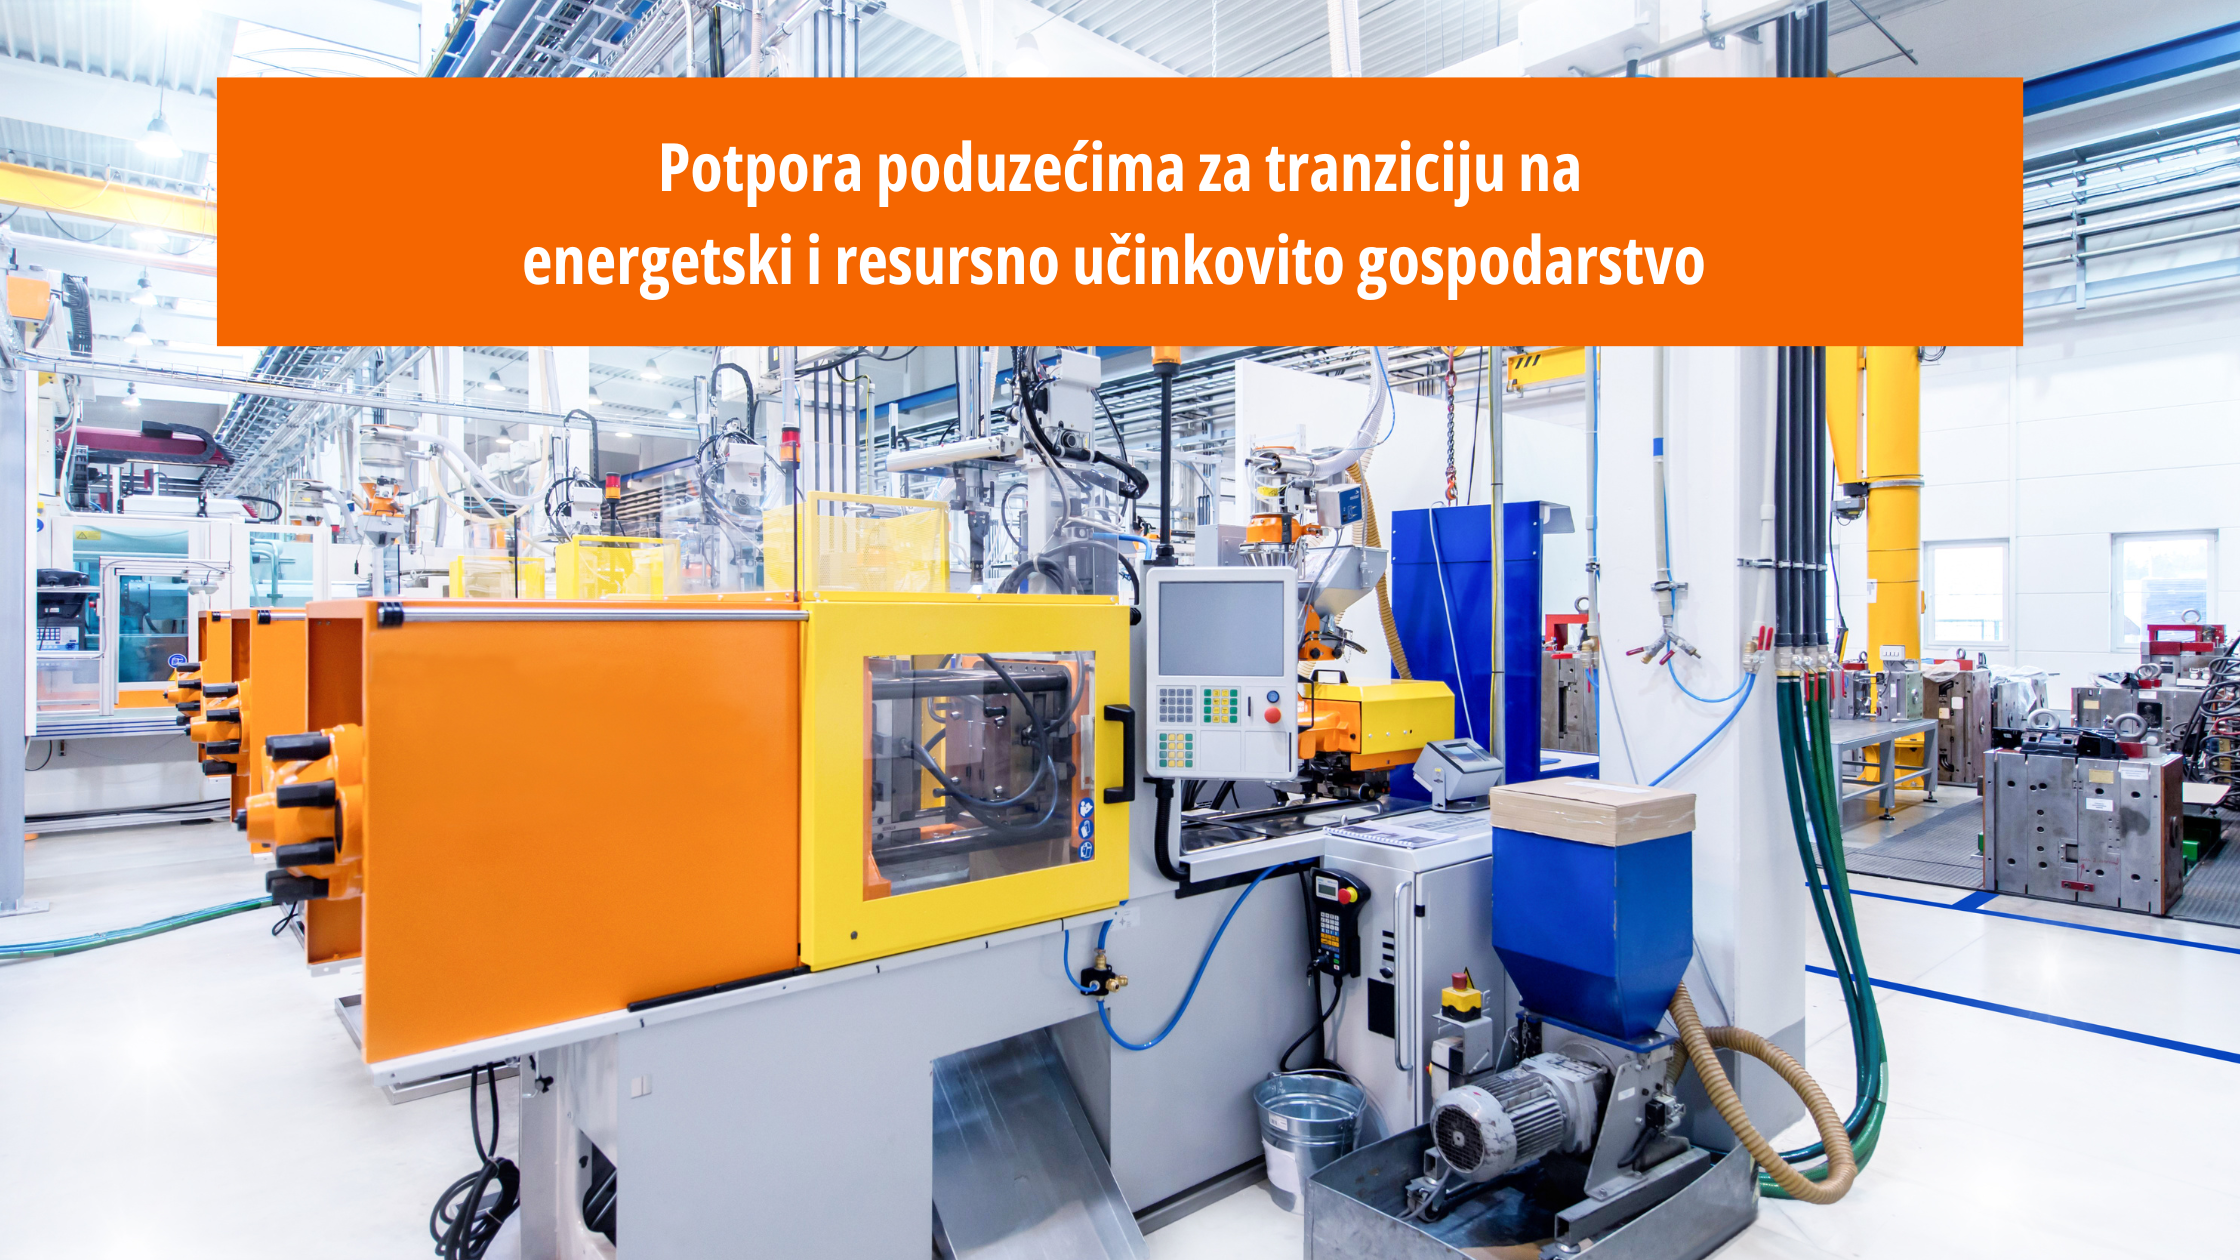 Potpora poduzećima za tranziciju na energetski i resursno učinkovito gospodarstvo  